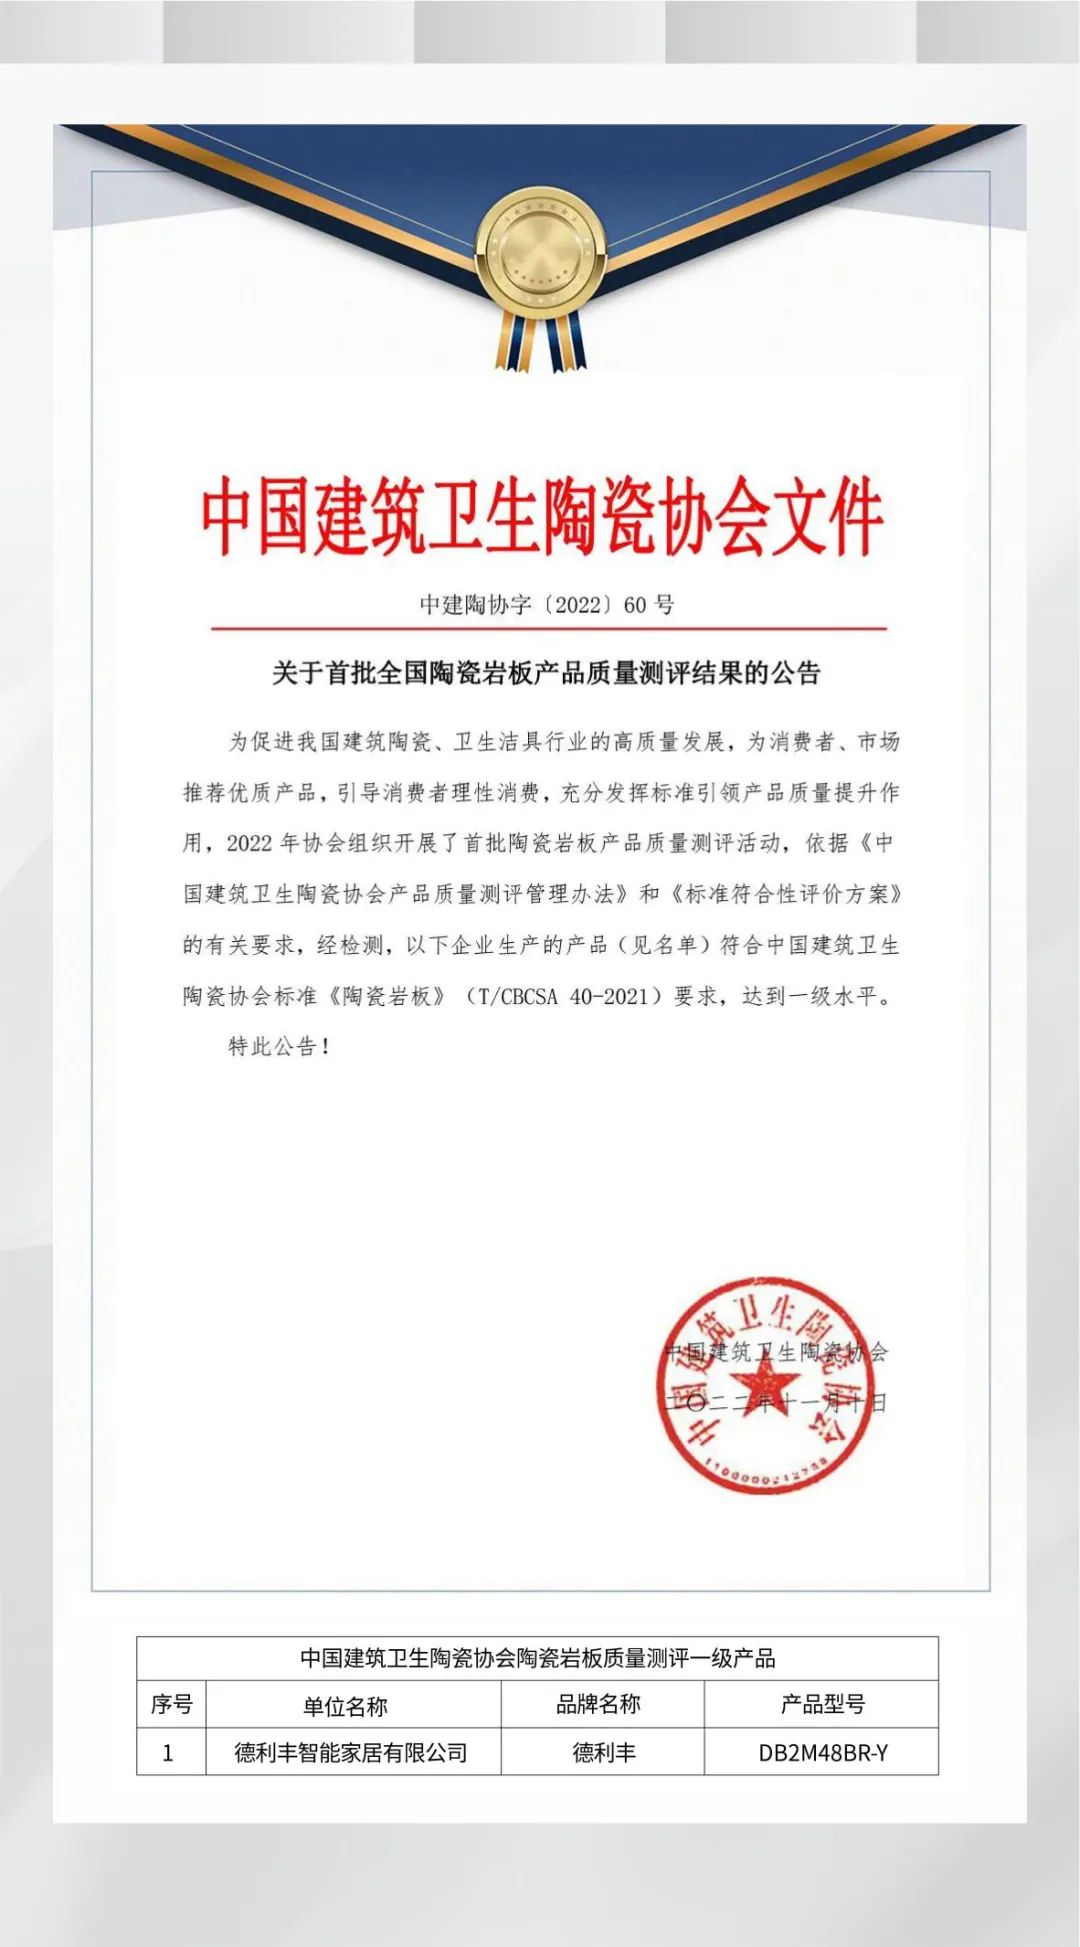 实力加冕 | 德利丰产品质量荣获中国建筑卫生陶瓷协会“一级水平”认证